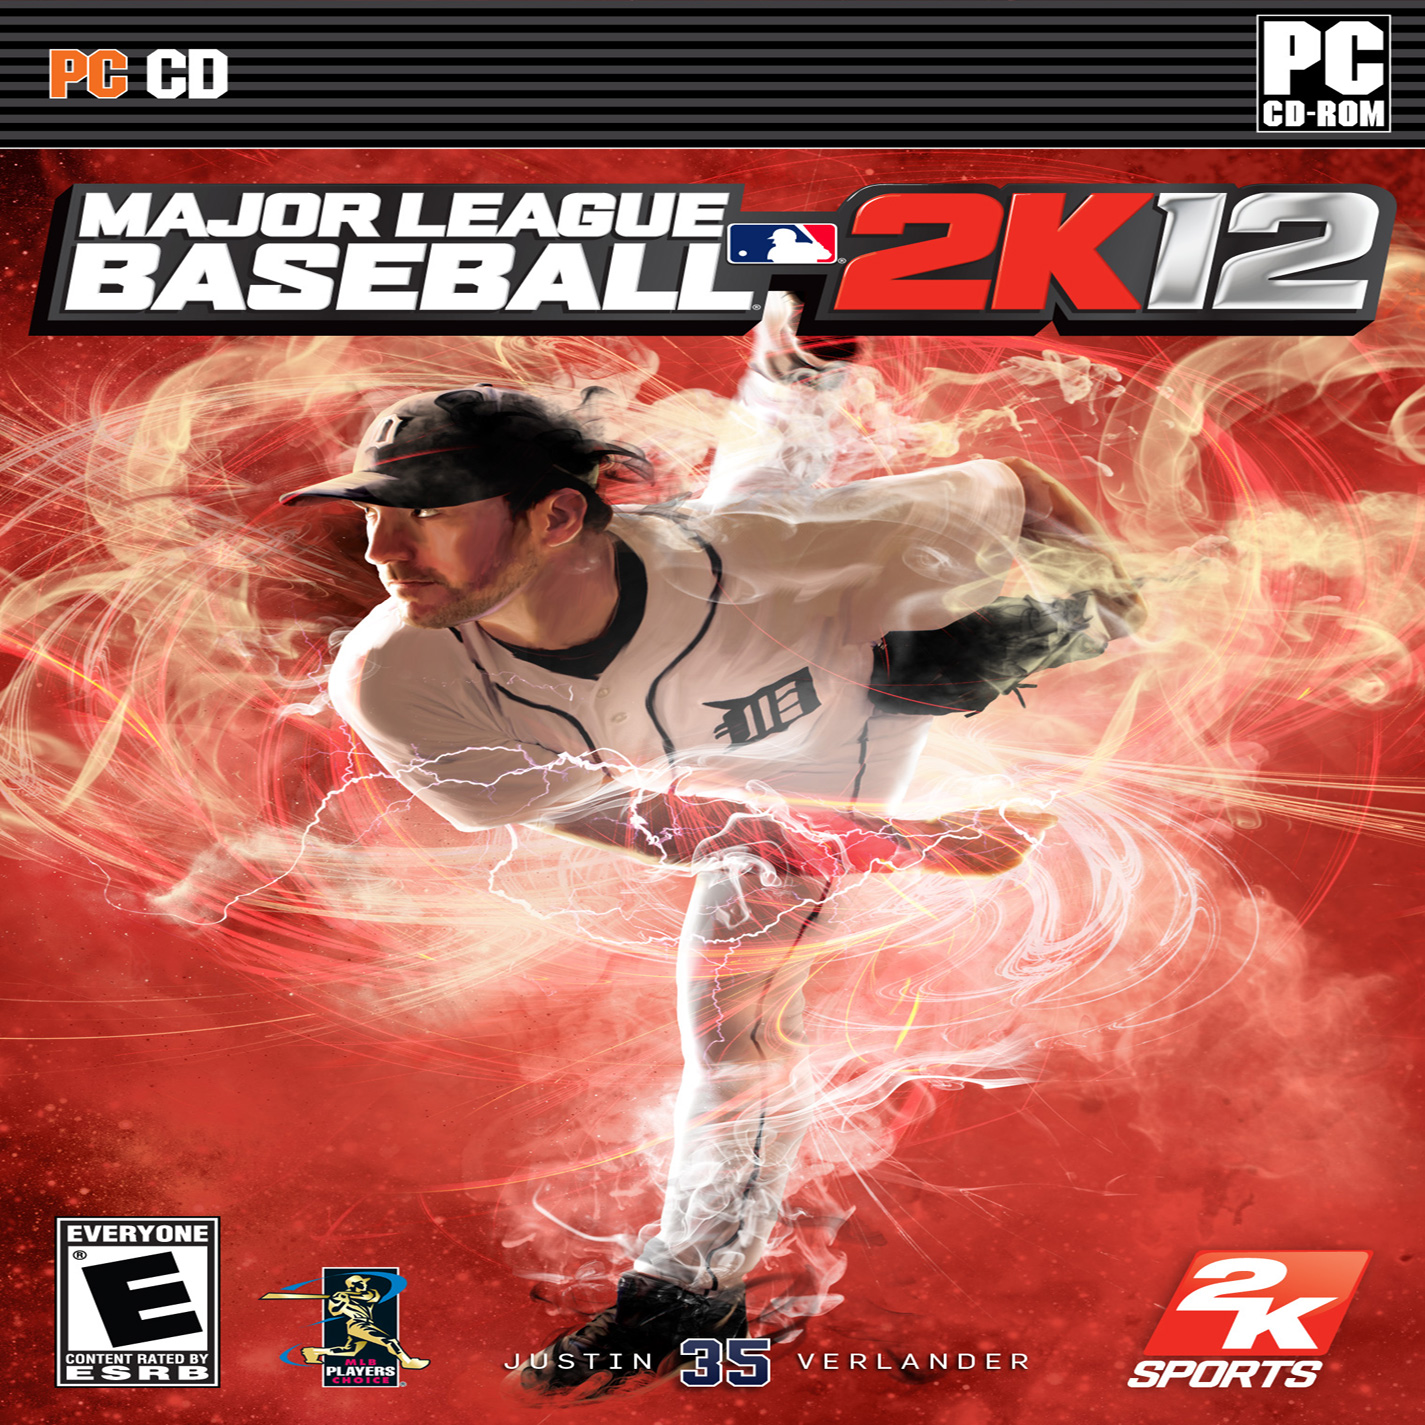 Major League Baseball 2K12 - pedn CD obal